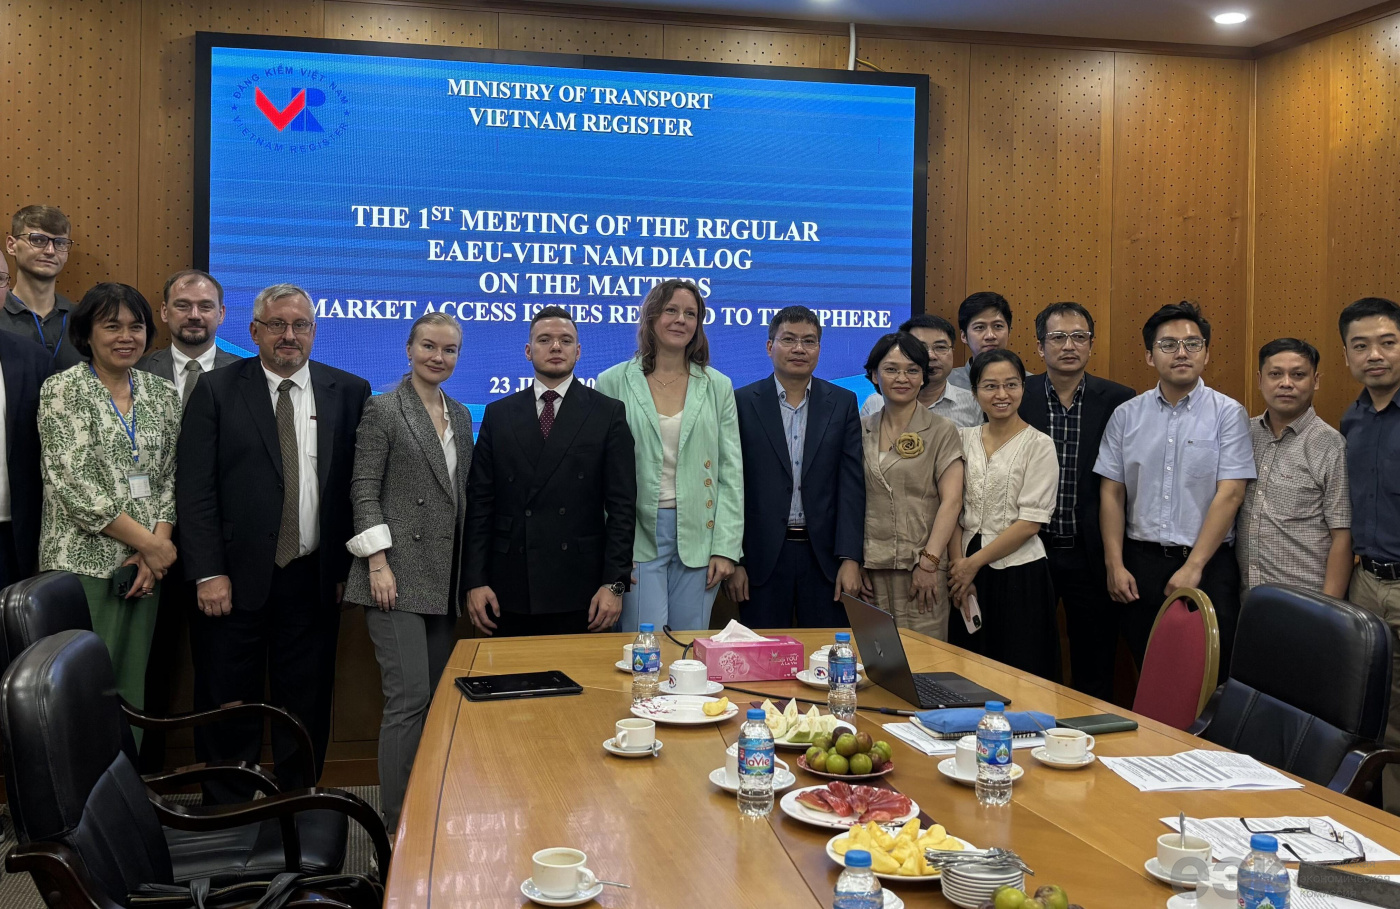  ЕАЭС обсудил с Вьетнамом вопросы доступа на рынок фармацевтической продукци 